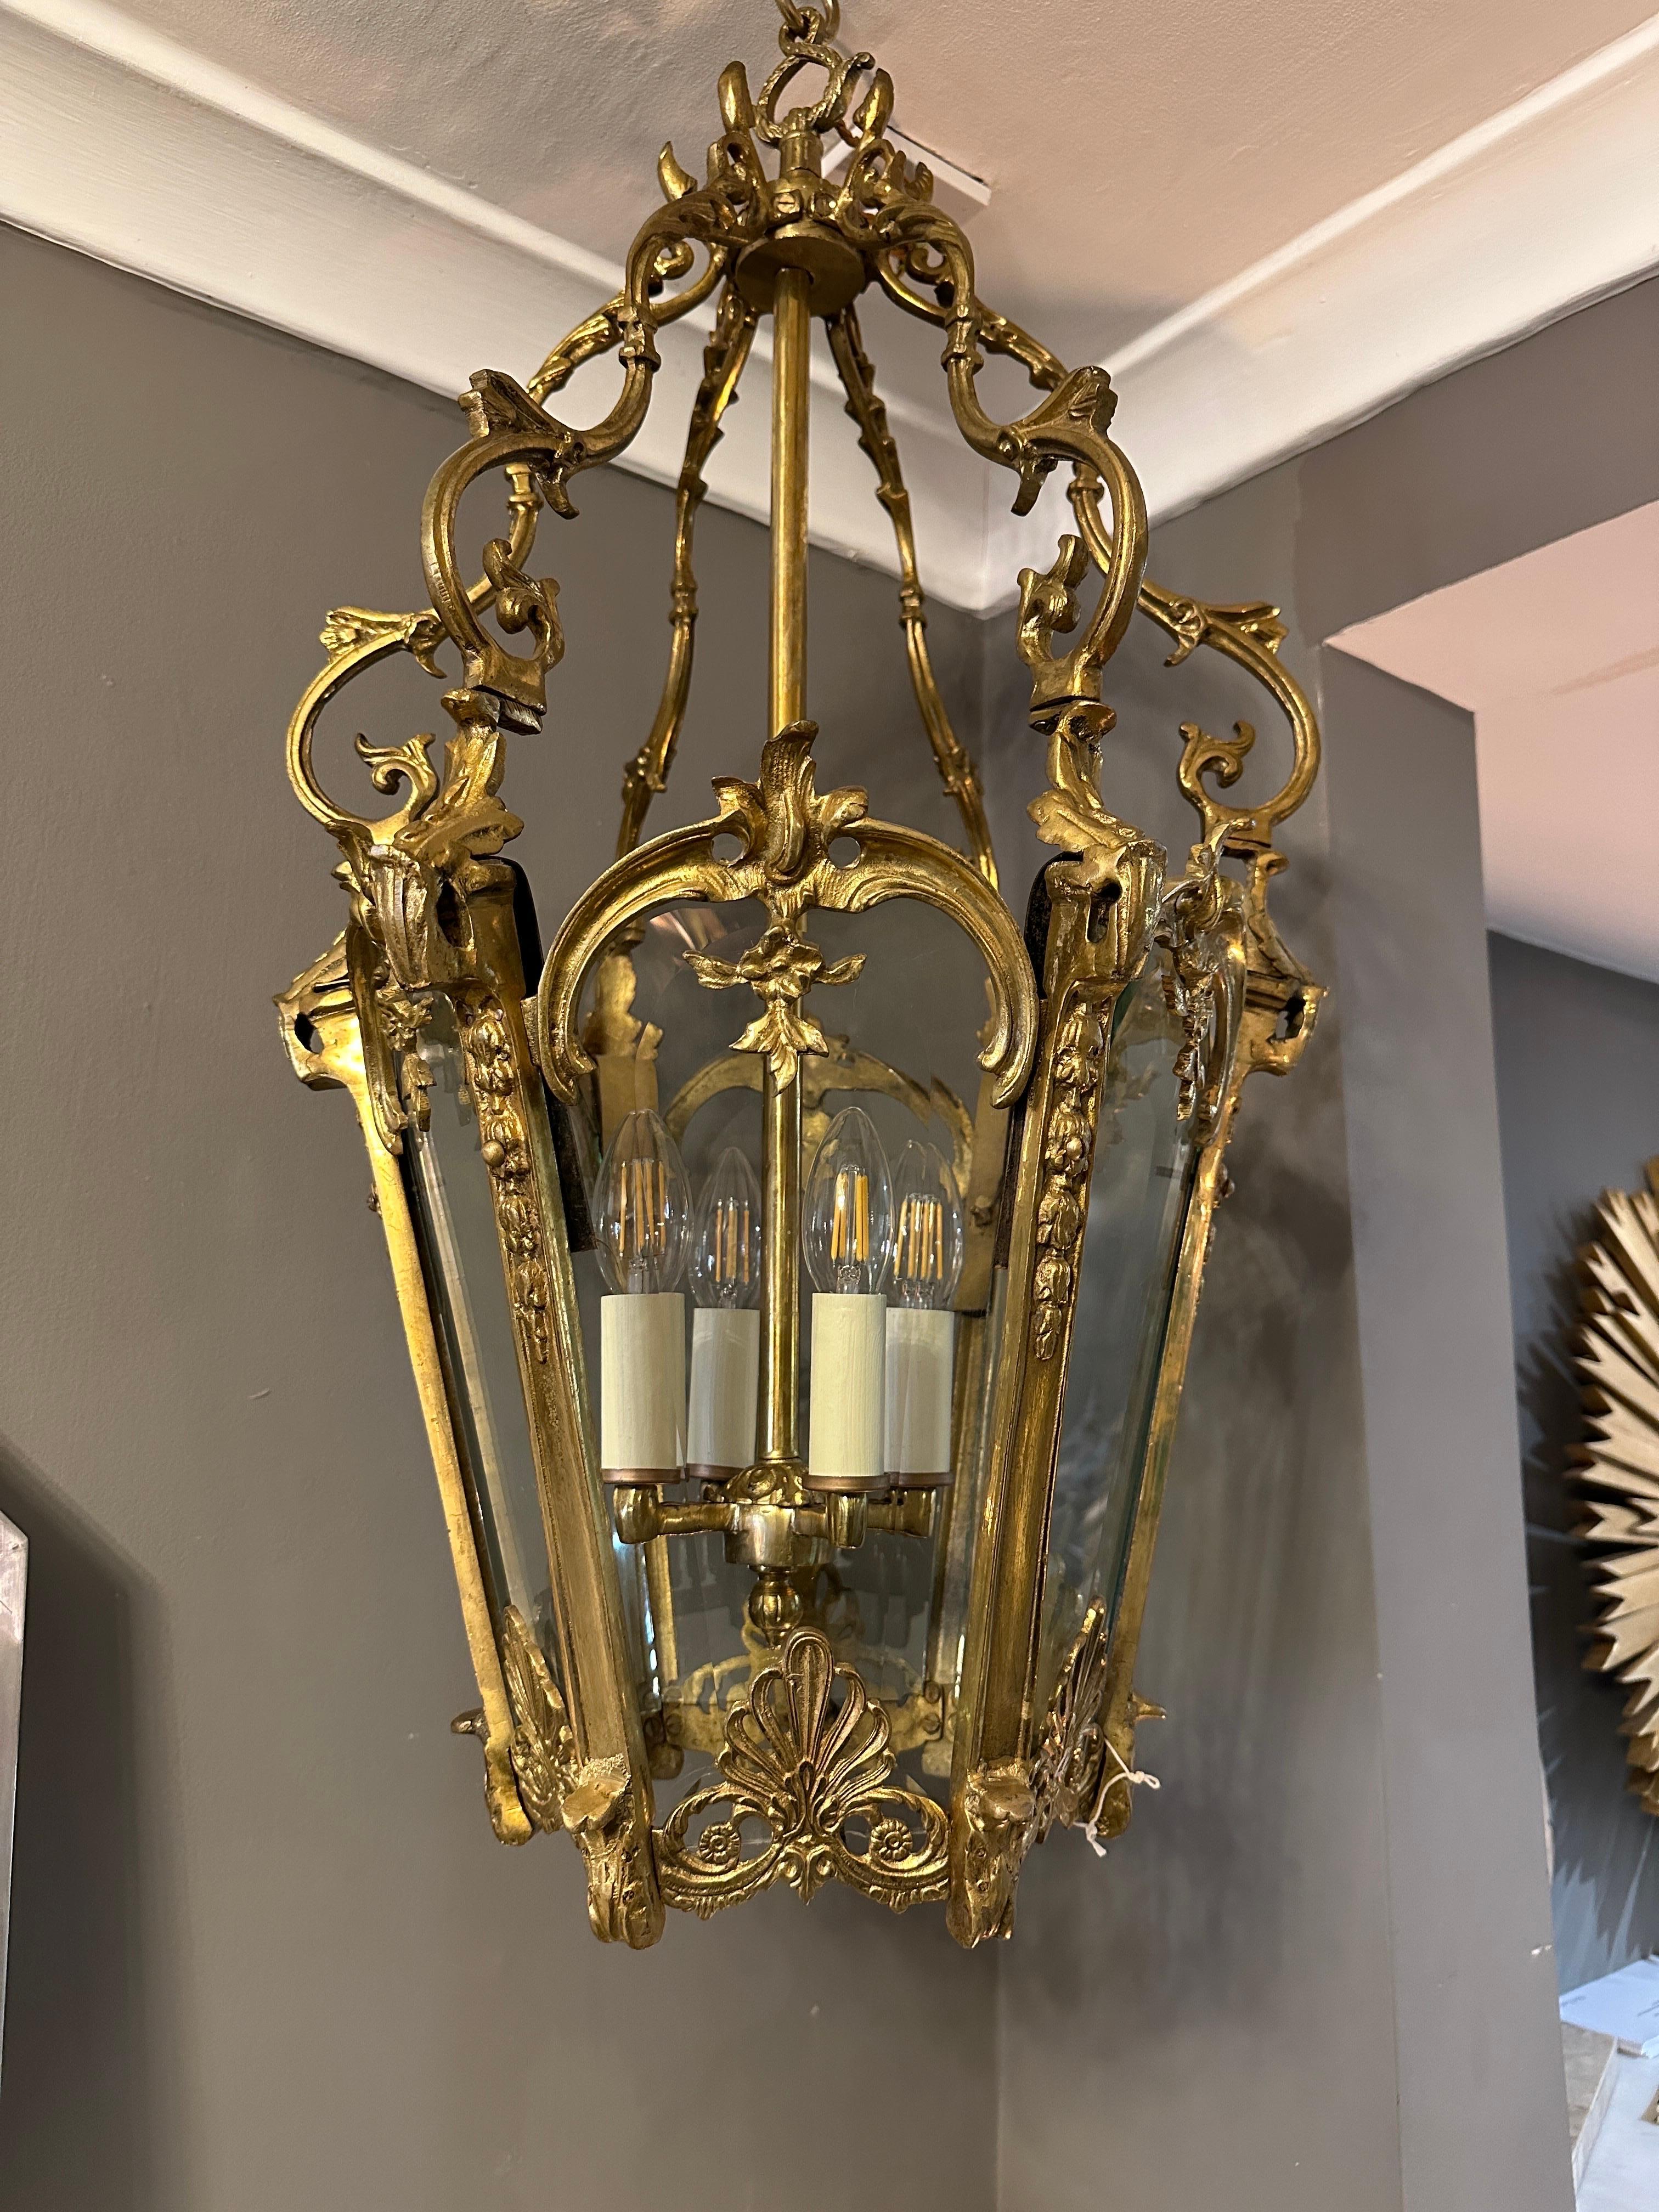 Große antike französische Rokoko-Laterne im Louis XV-Stil aus vergoldeter Bronze mit sechs geschliffenen, abgeschrägten Glasscheiben und einem kunstvollen Baldachin mit Akanthusranken und Blattwerk. Die Glastafeln sind mit einer C-Schnecke und